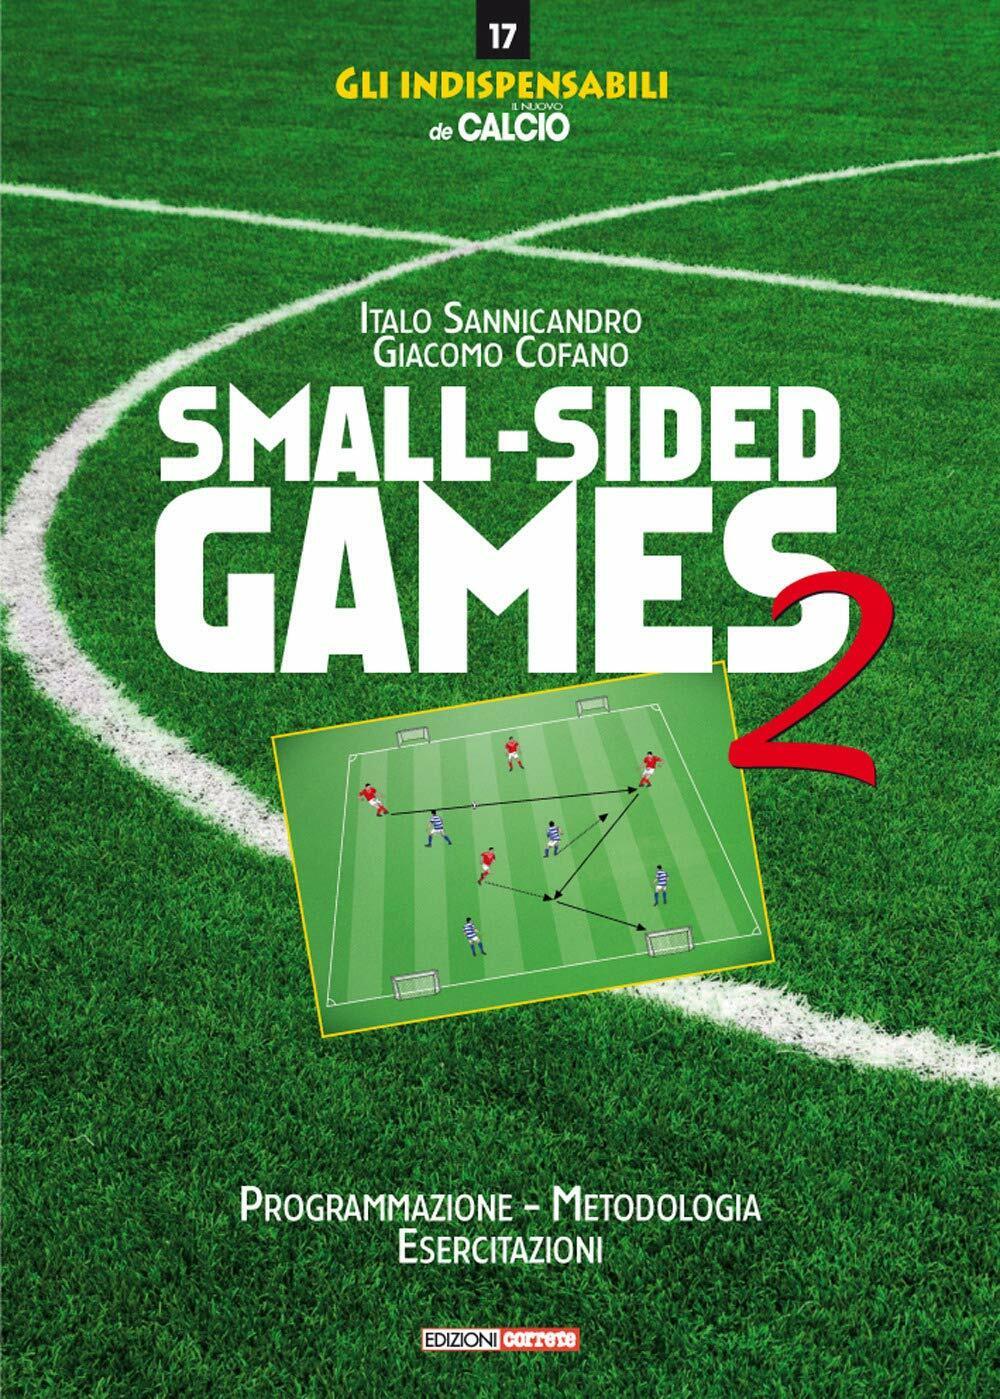 Small-sided games vol.2 - Italo Sannicandro, Giacomo Cofano - Correre, 2019 libro usato